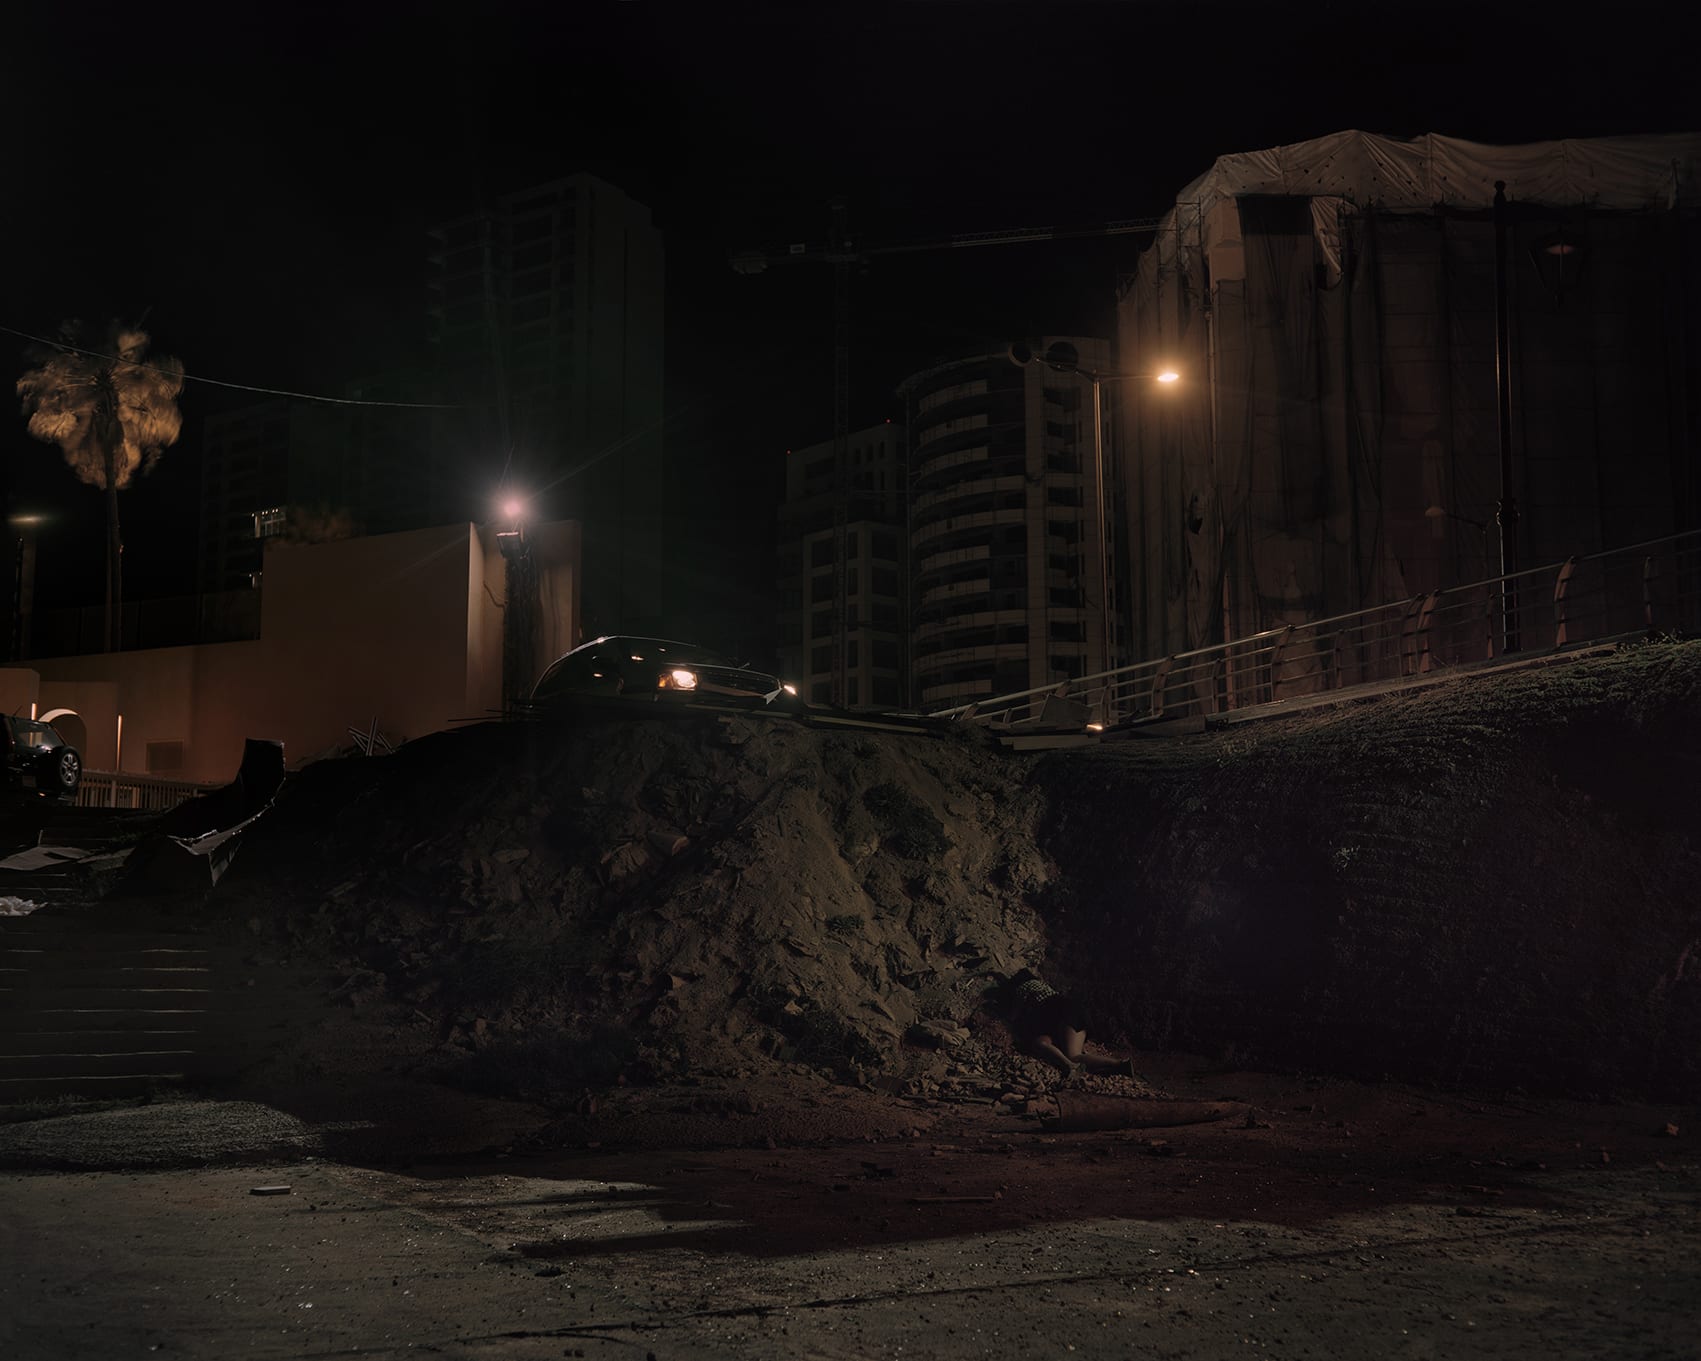 لماذا تلتقط هذه المصورة أجساد نساء "ميتات" في شوارع بيروت؟